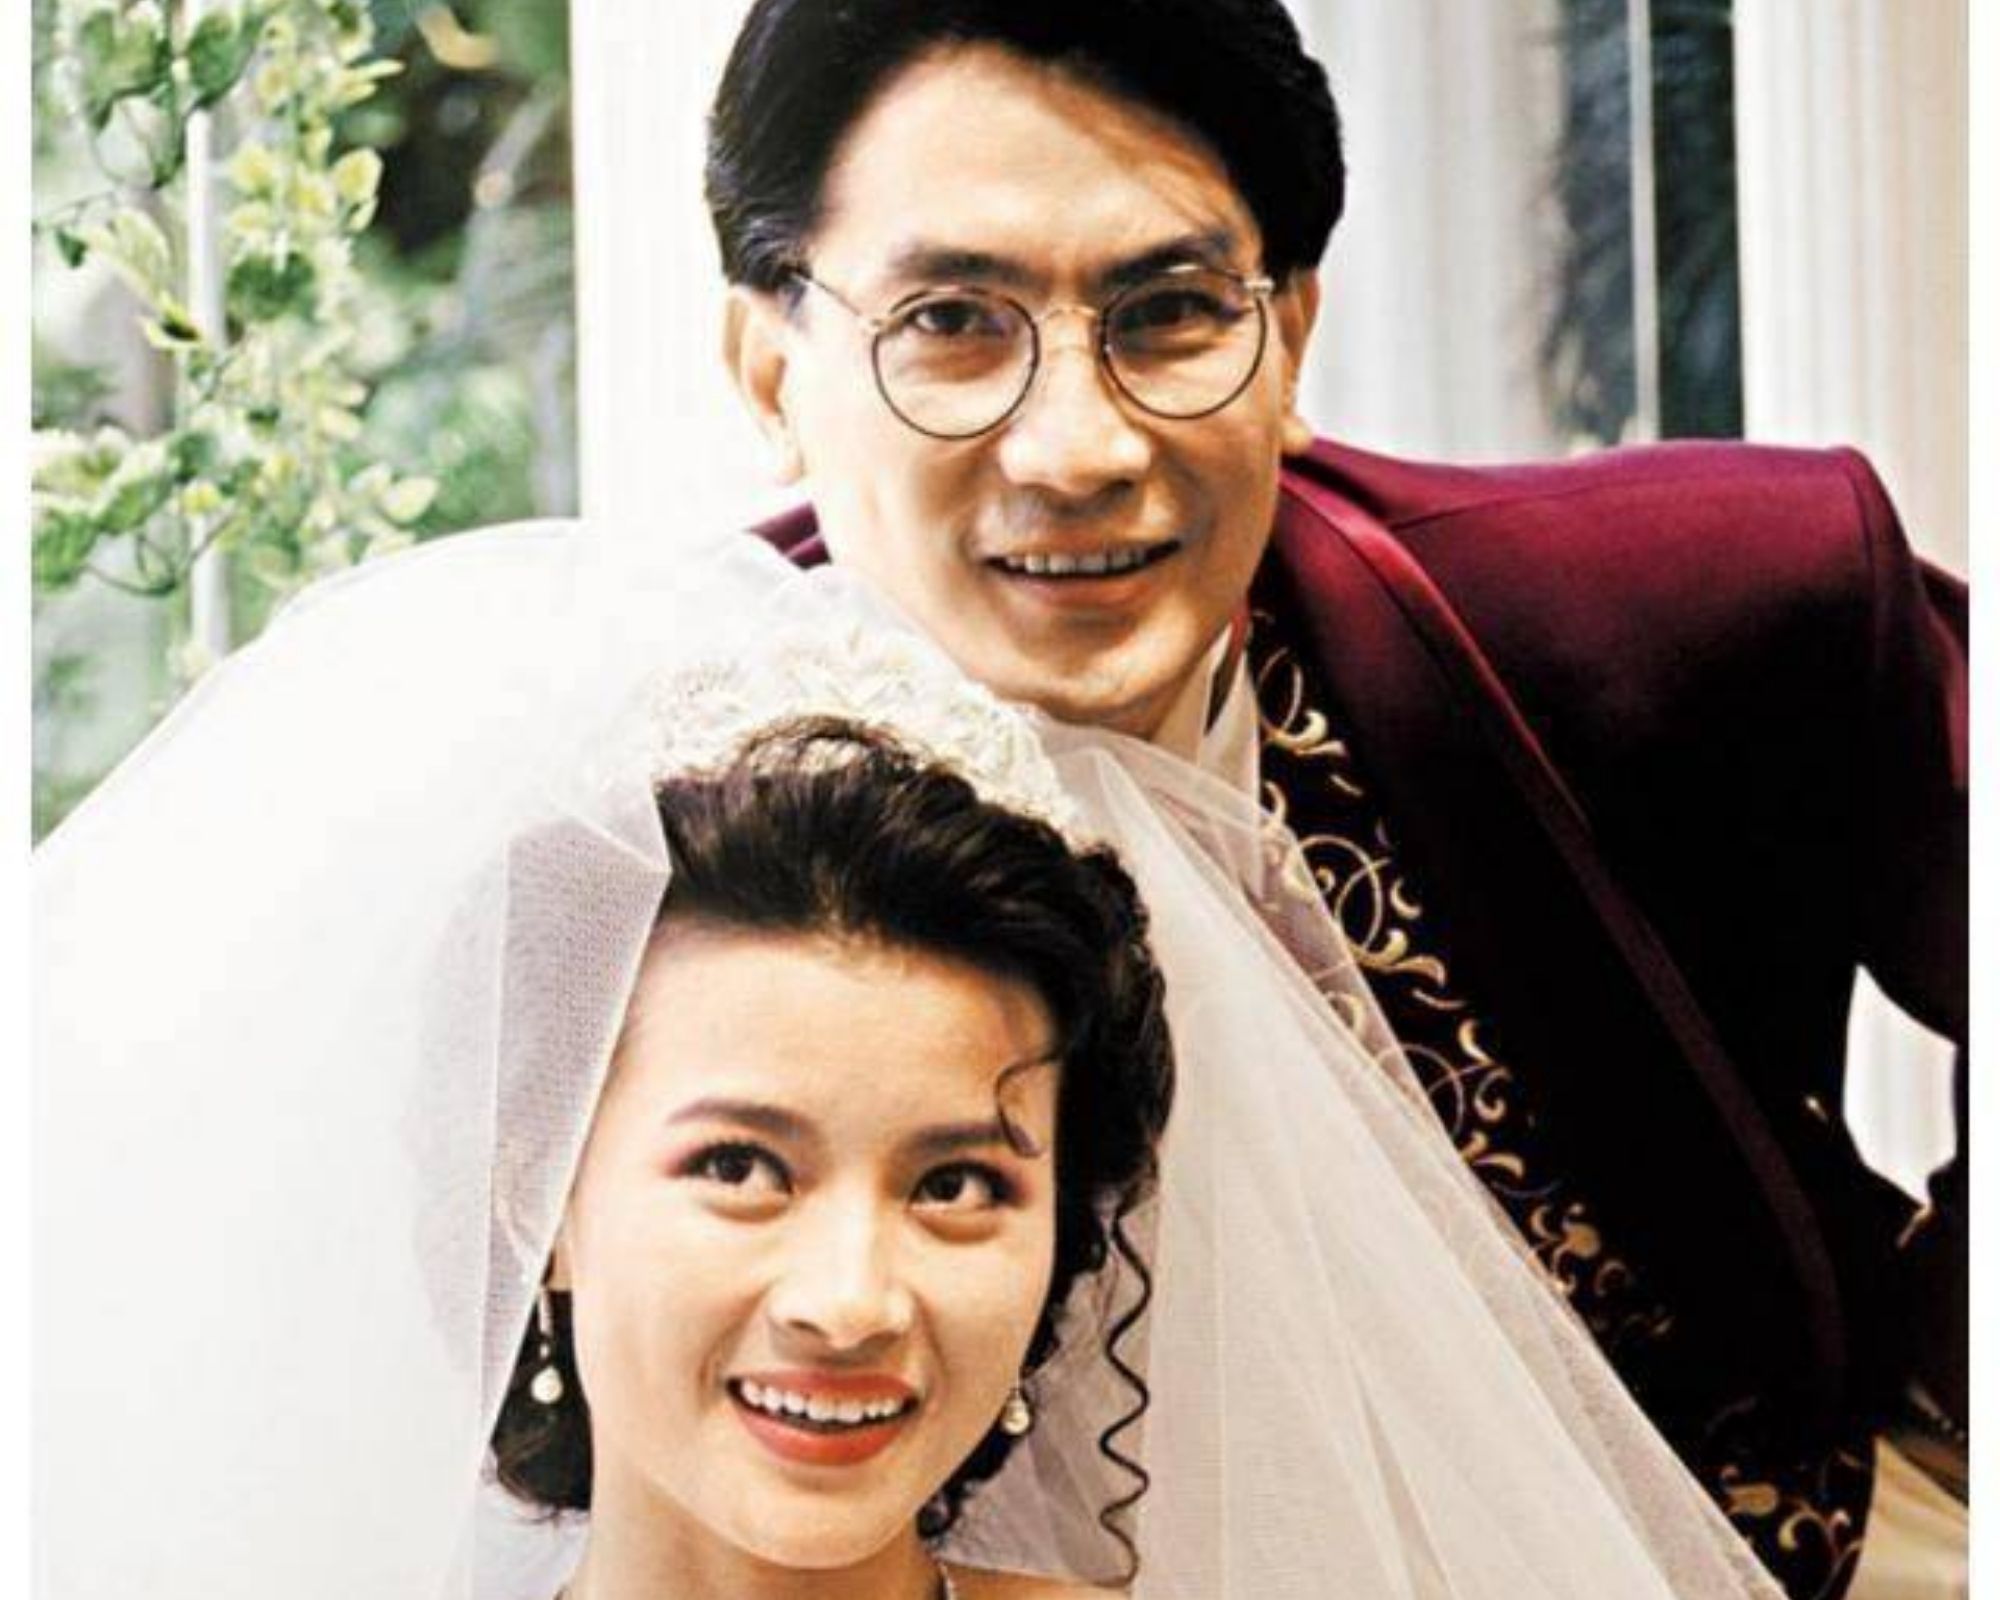 Nam diễn viên nổi tiếng nhờ đóng cặp với Lý Tiểu Long, lấy vợ kém 30 tuổi - 4